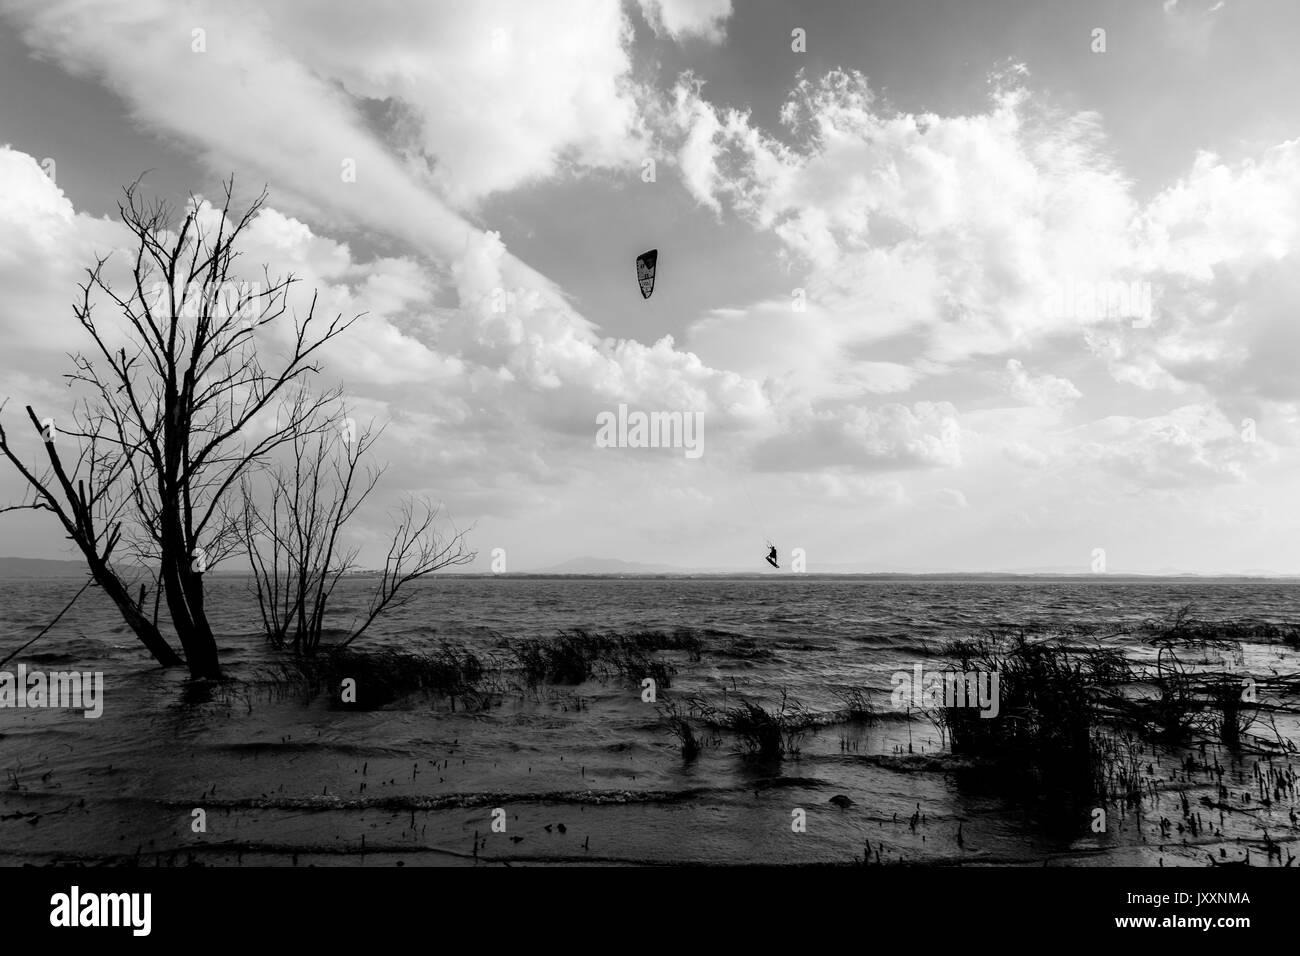 Un uomo a volare con un kite surf sulle sponde di un lago e con un cielo profondo sullo sfondo e gli alberi scheletrici in primo piano Foto Stock